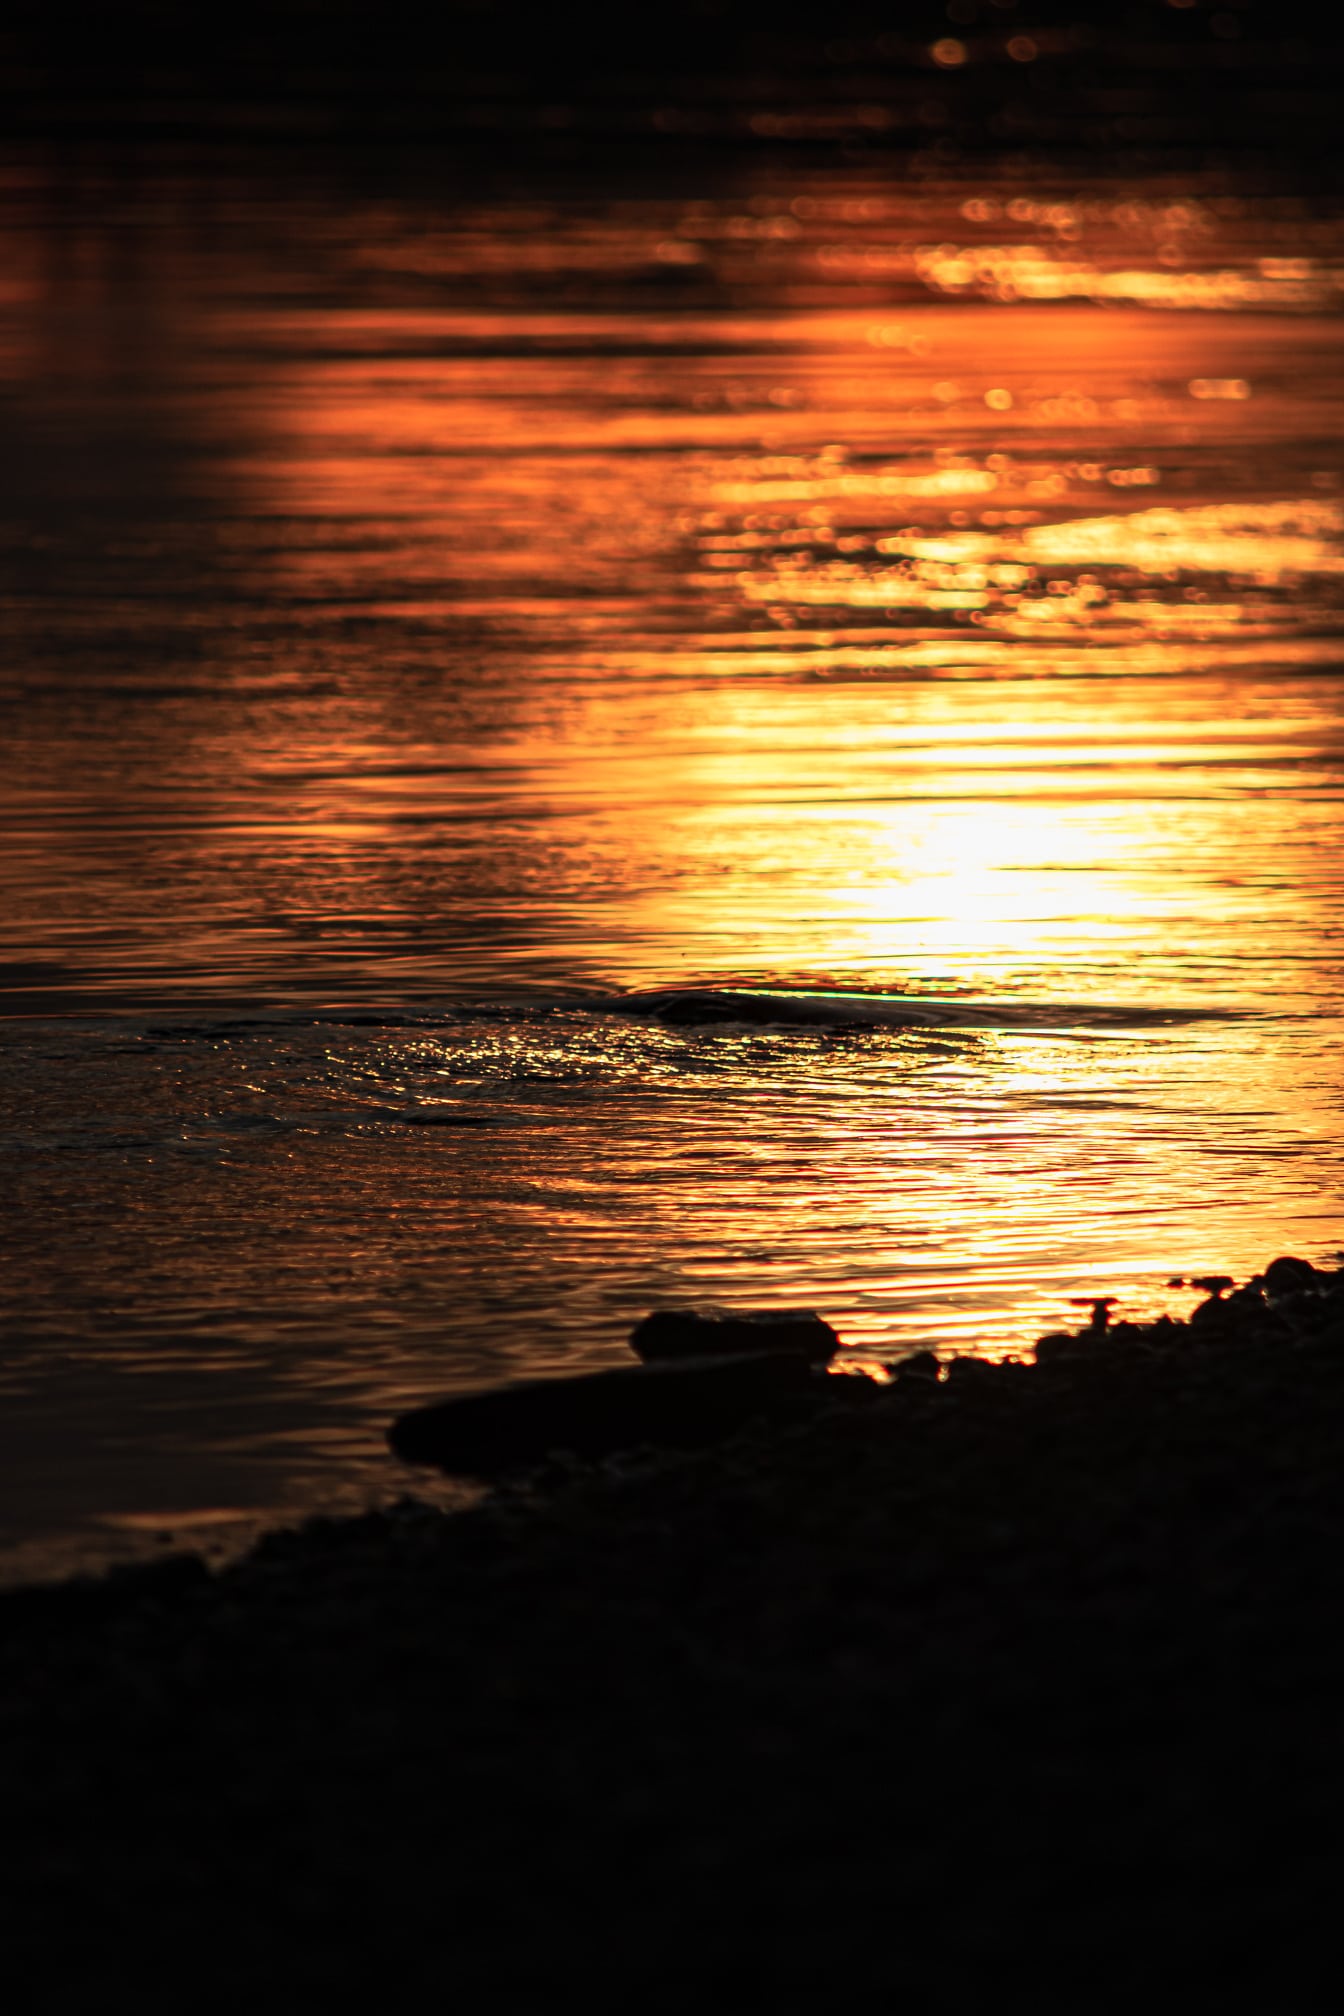 Vodní vlnka na horizontu vodní hladiny při oranžově žlutém východu slunce